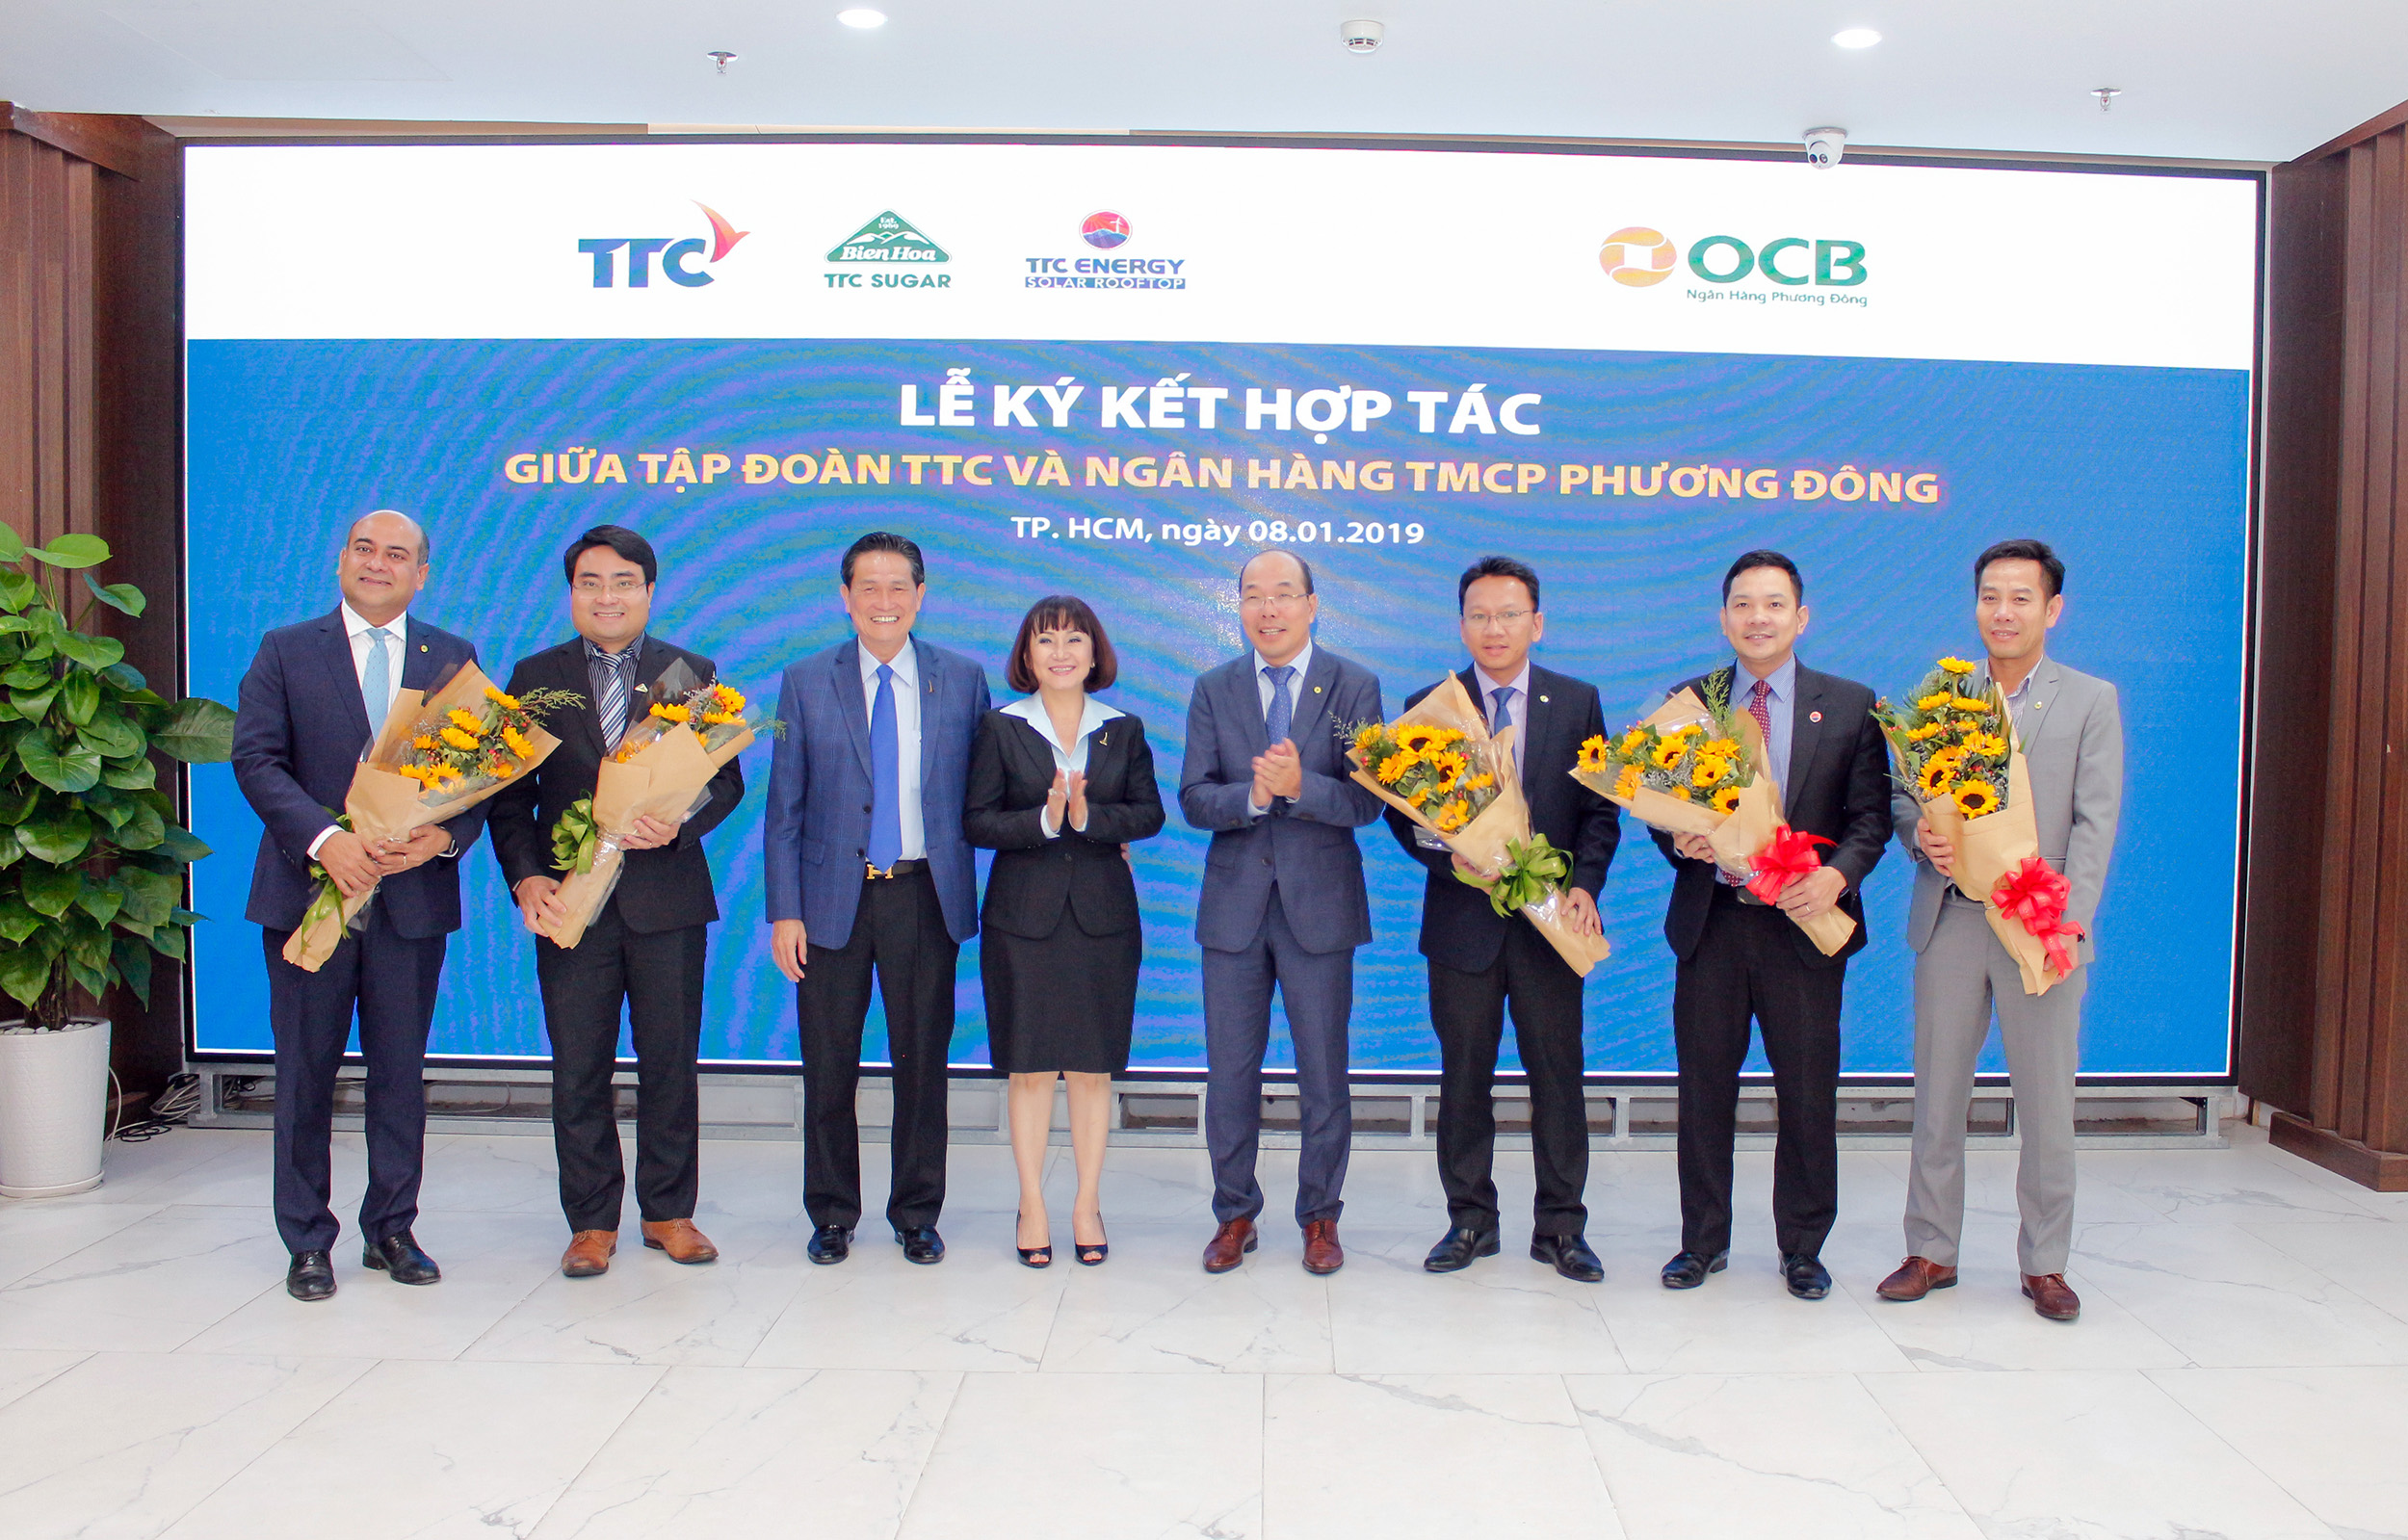 Ông Trịnh Văn Tuấn – Chủ tịch HĐQT OCB và Ông Đặng Văn Thành – Chủ tịch Tập đoàn TTC tặng hoa chúc mừng các đơn vị thực hiện ký kết